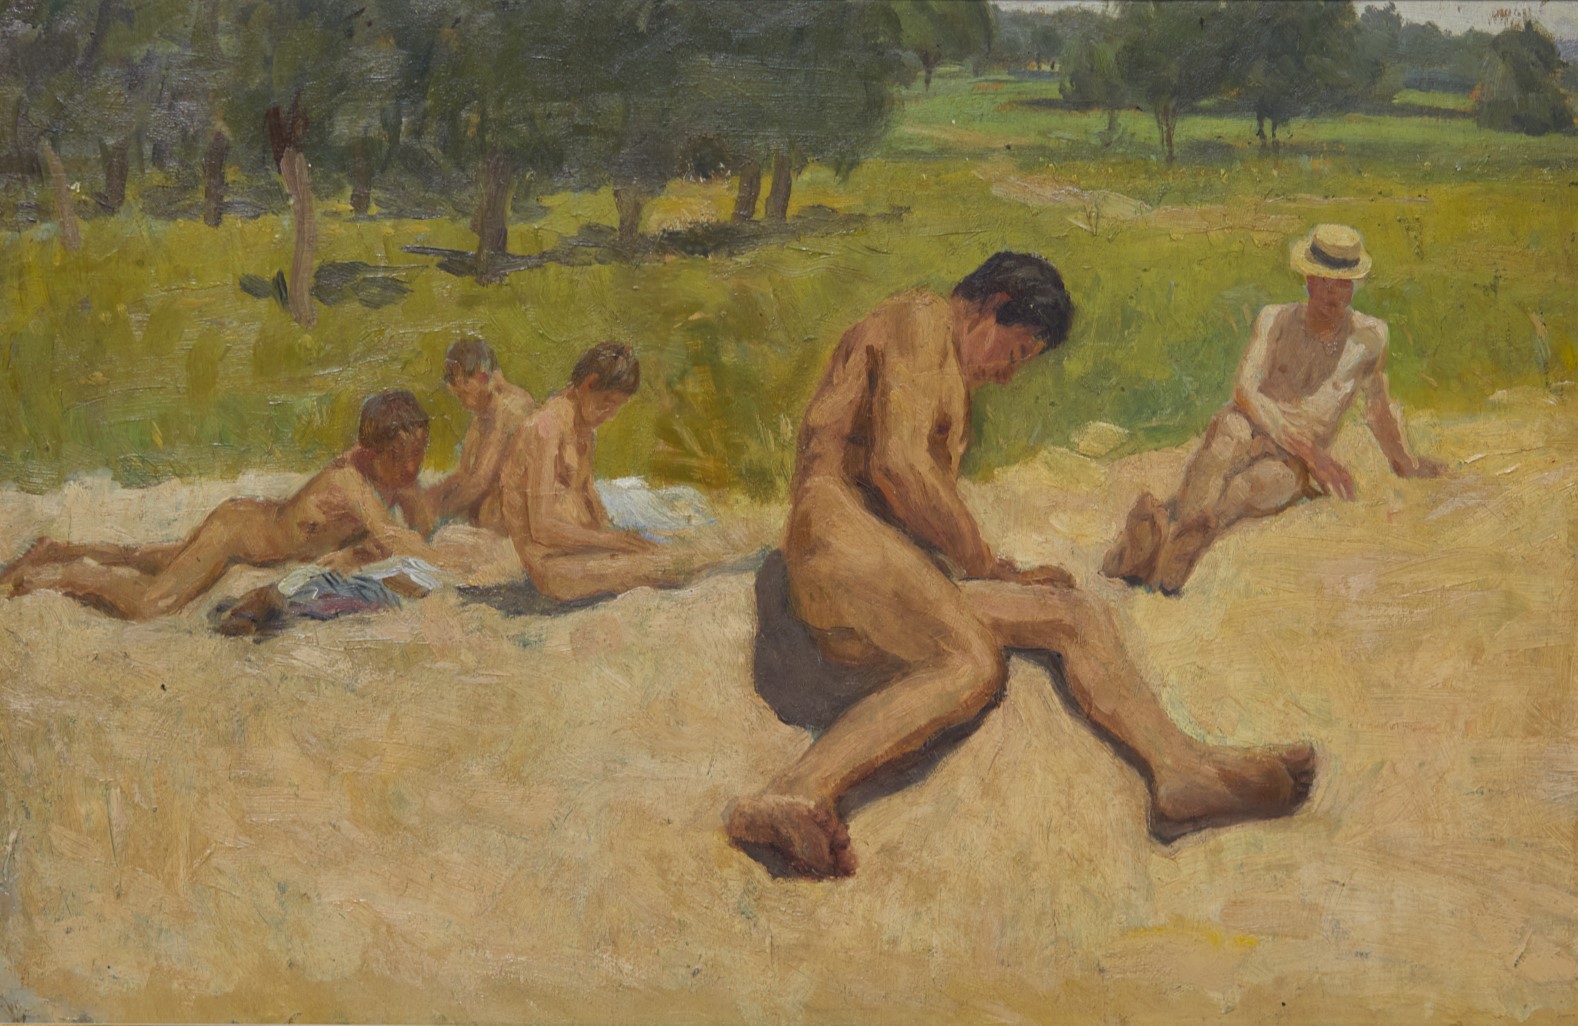 French nudist boys